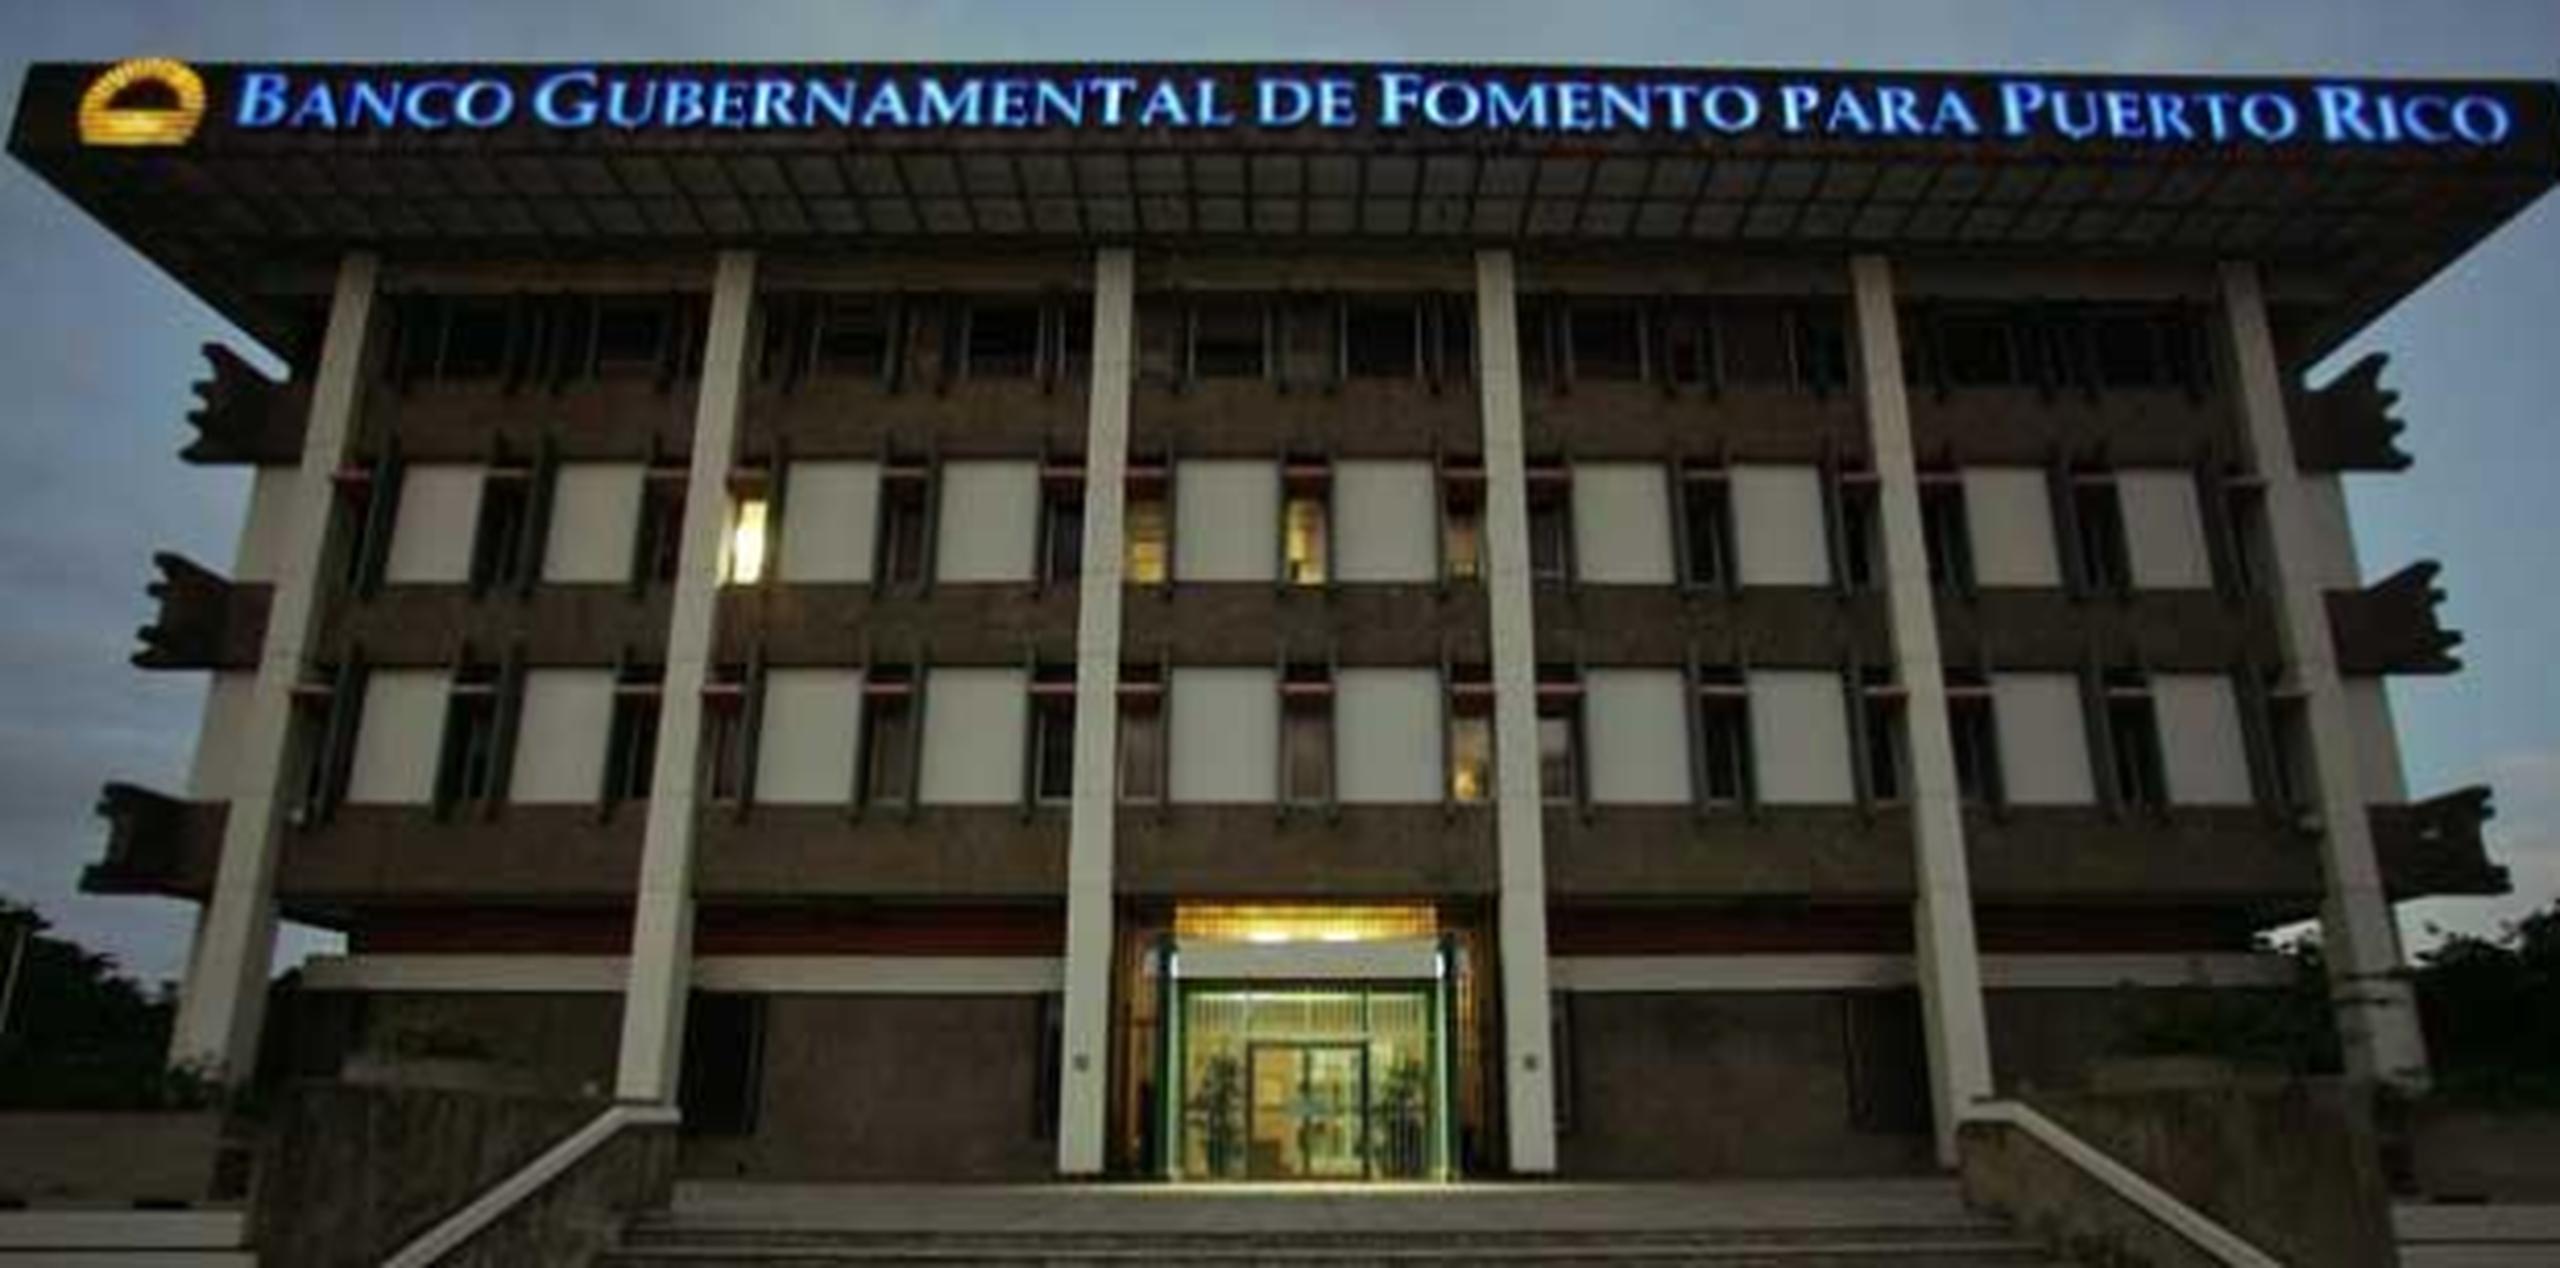 El Banco Gubernamental de Fomento indicó que la Corporación para el Financiamiento Público no hizo el pago completo. (Archivo)